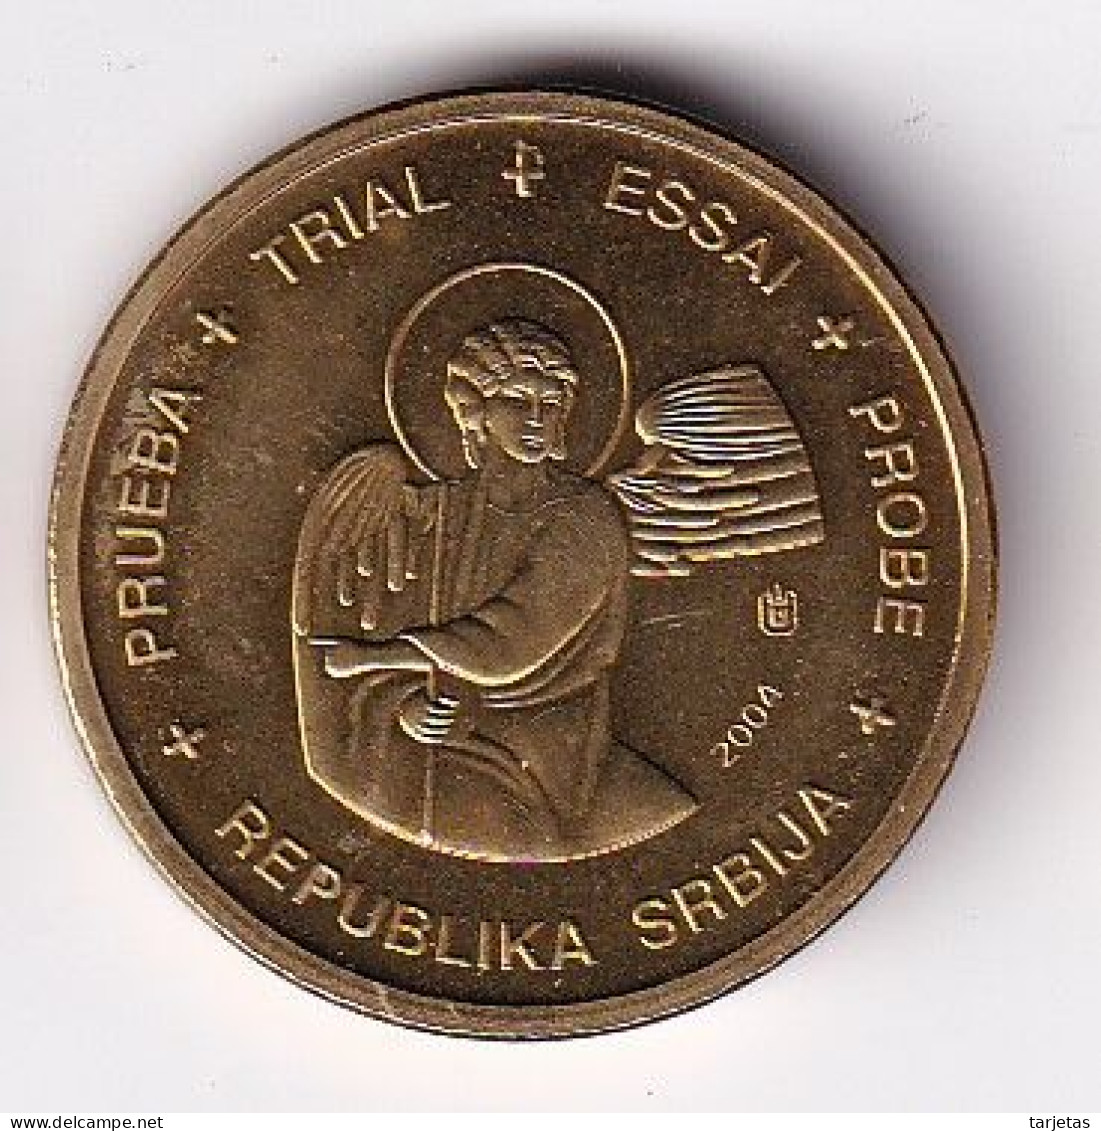 MONEDA DE PRUEBA DE SERBIA DE 10 CENTIMOS DE EURO DEL AÑO 2004 (COIN) - Serbie